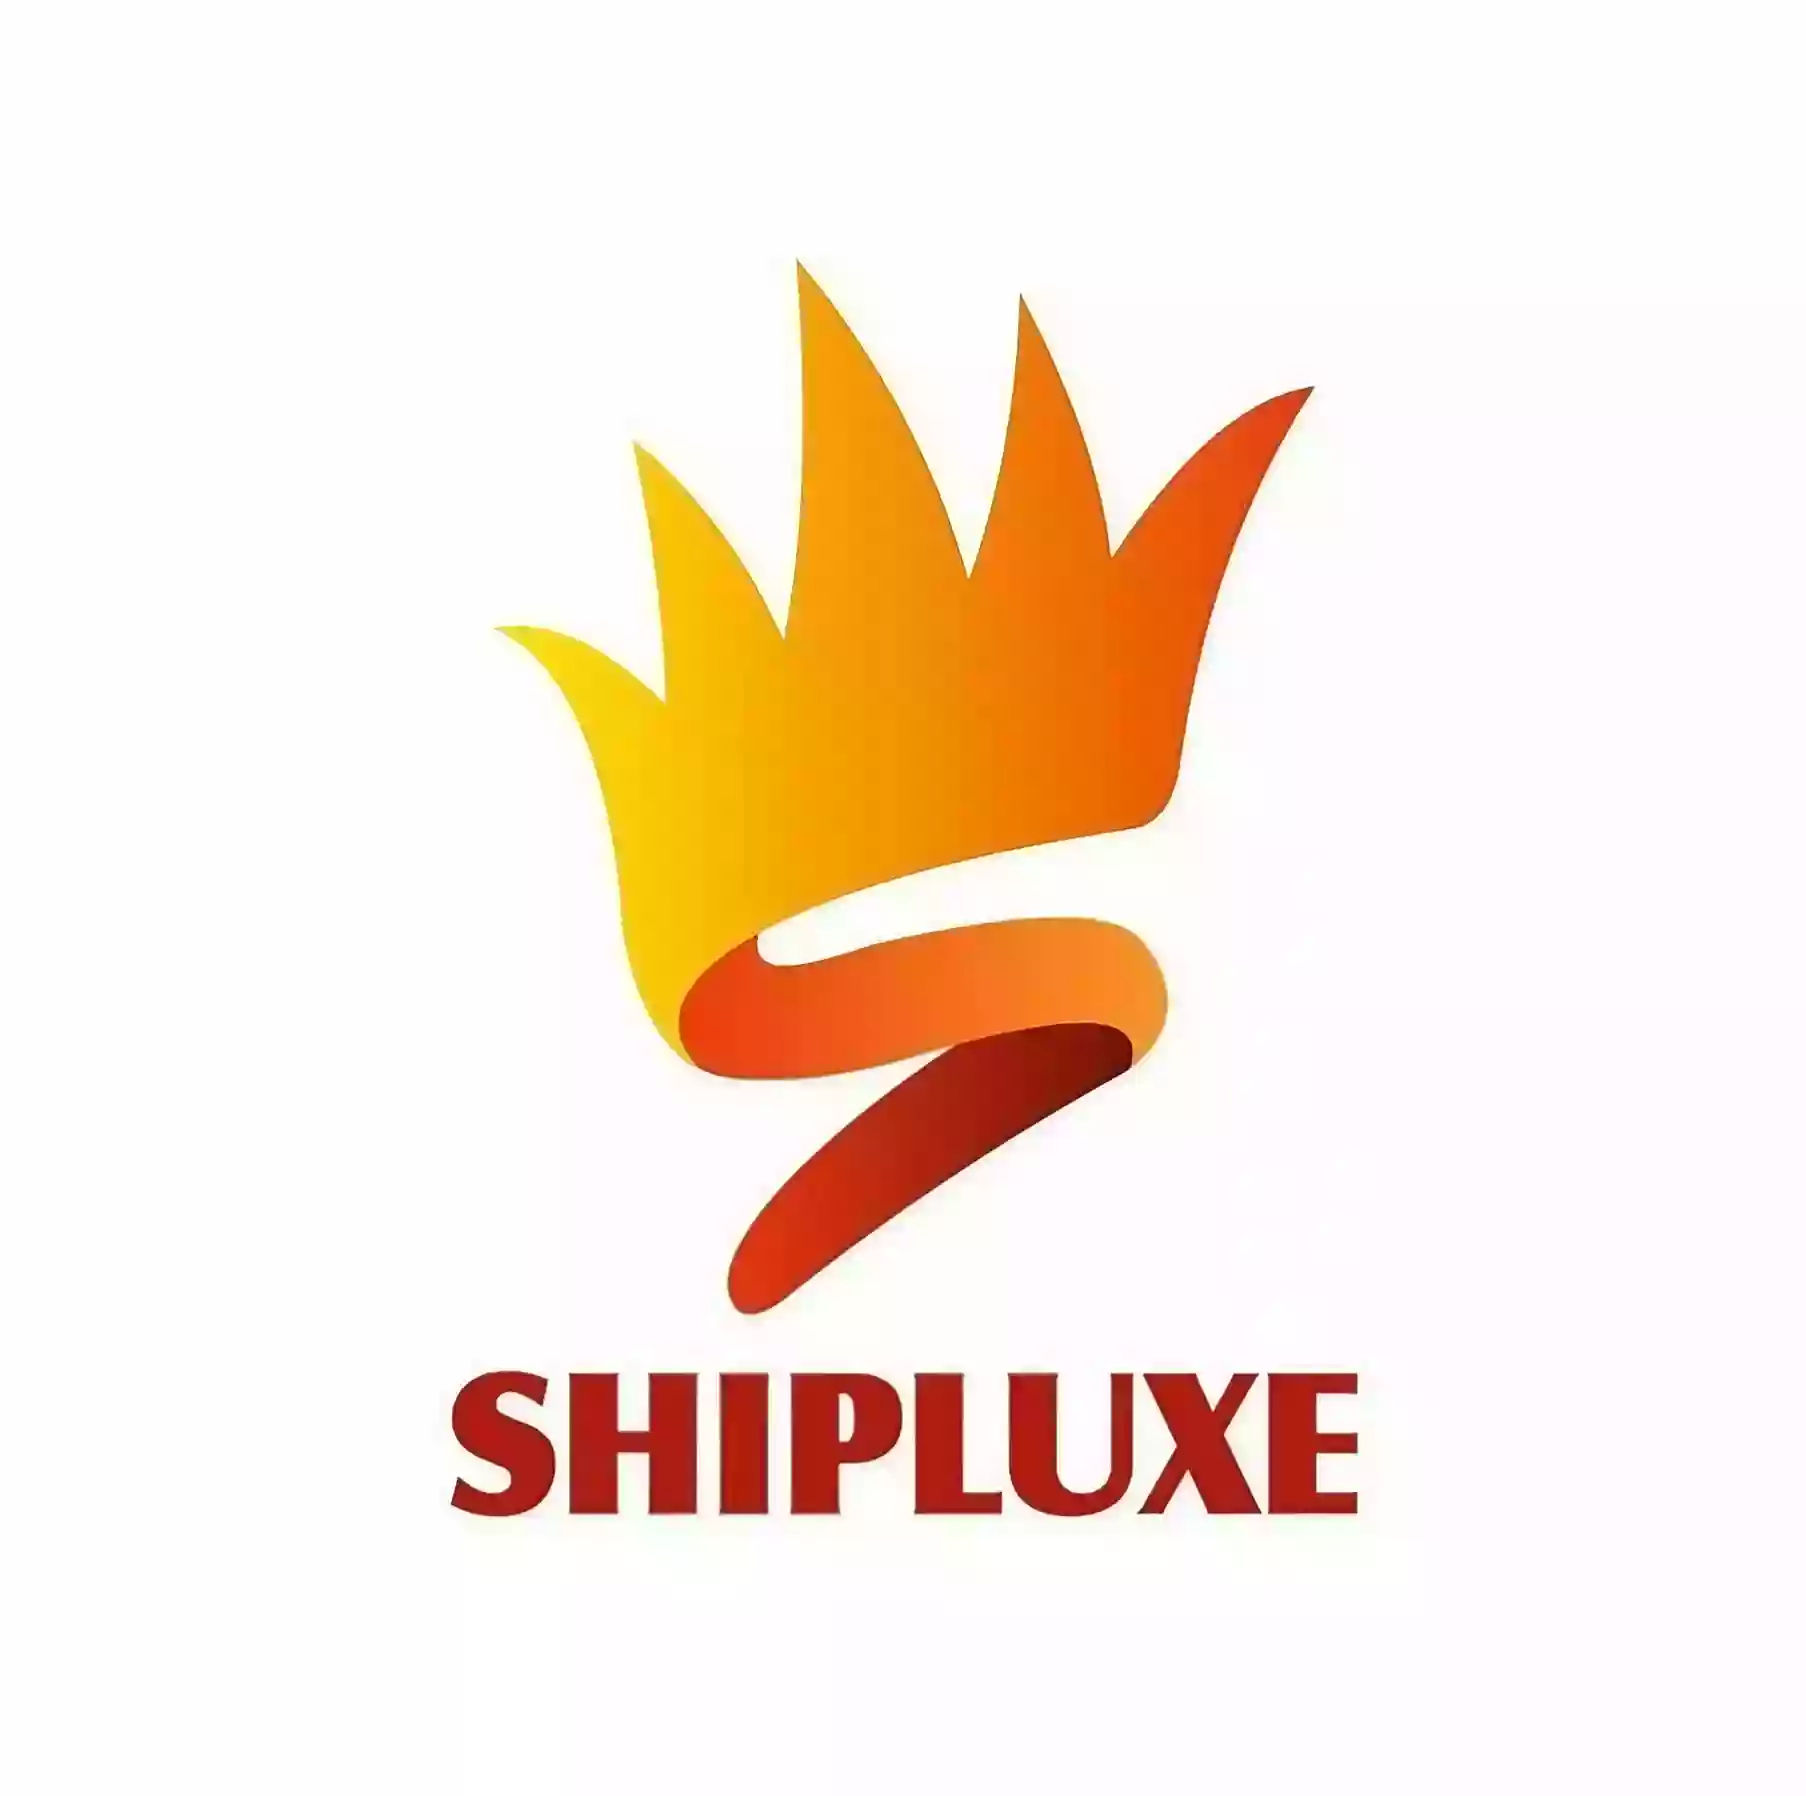 Shipluxe